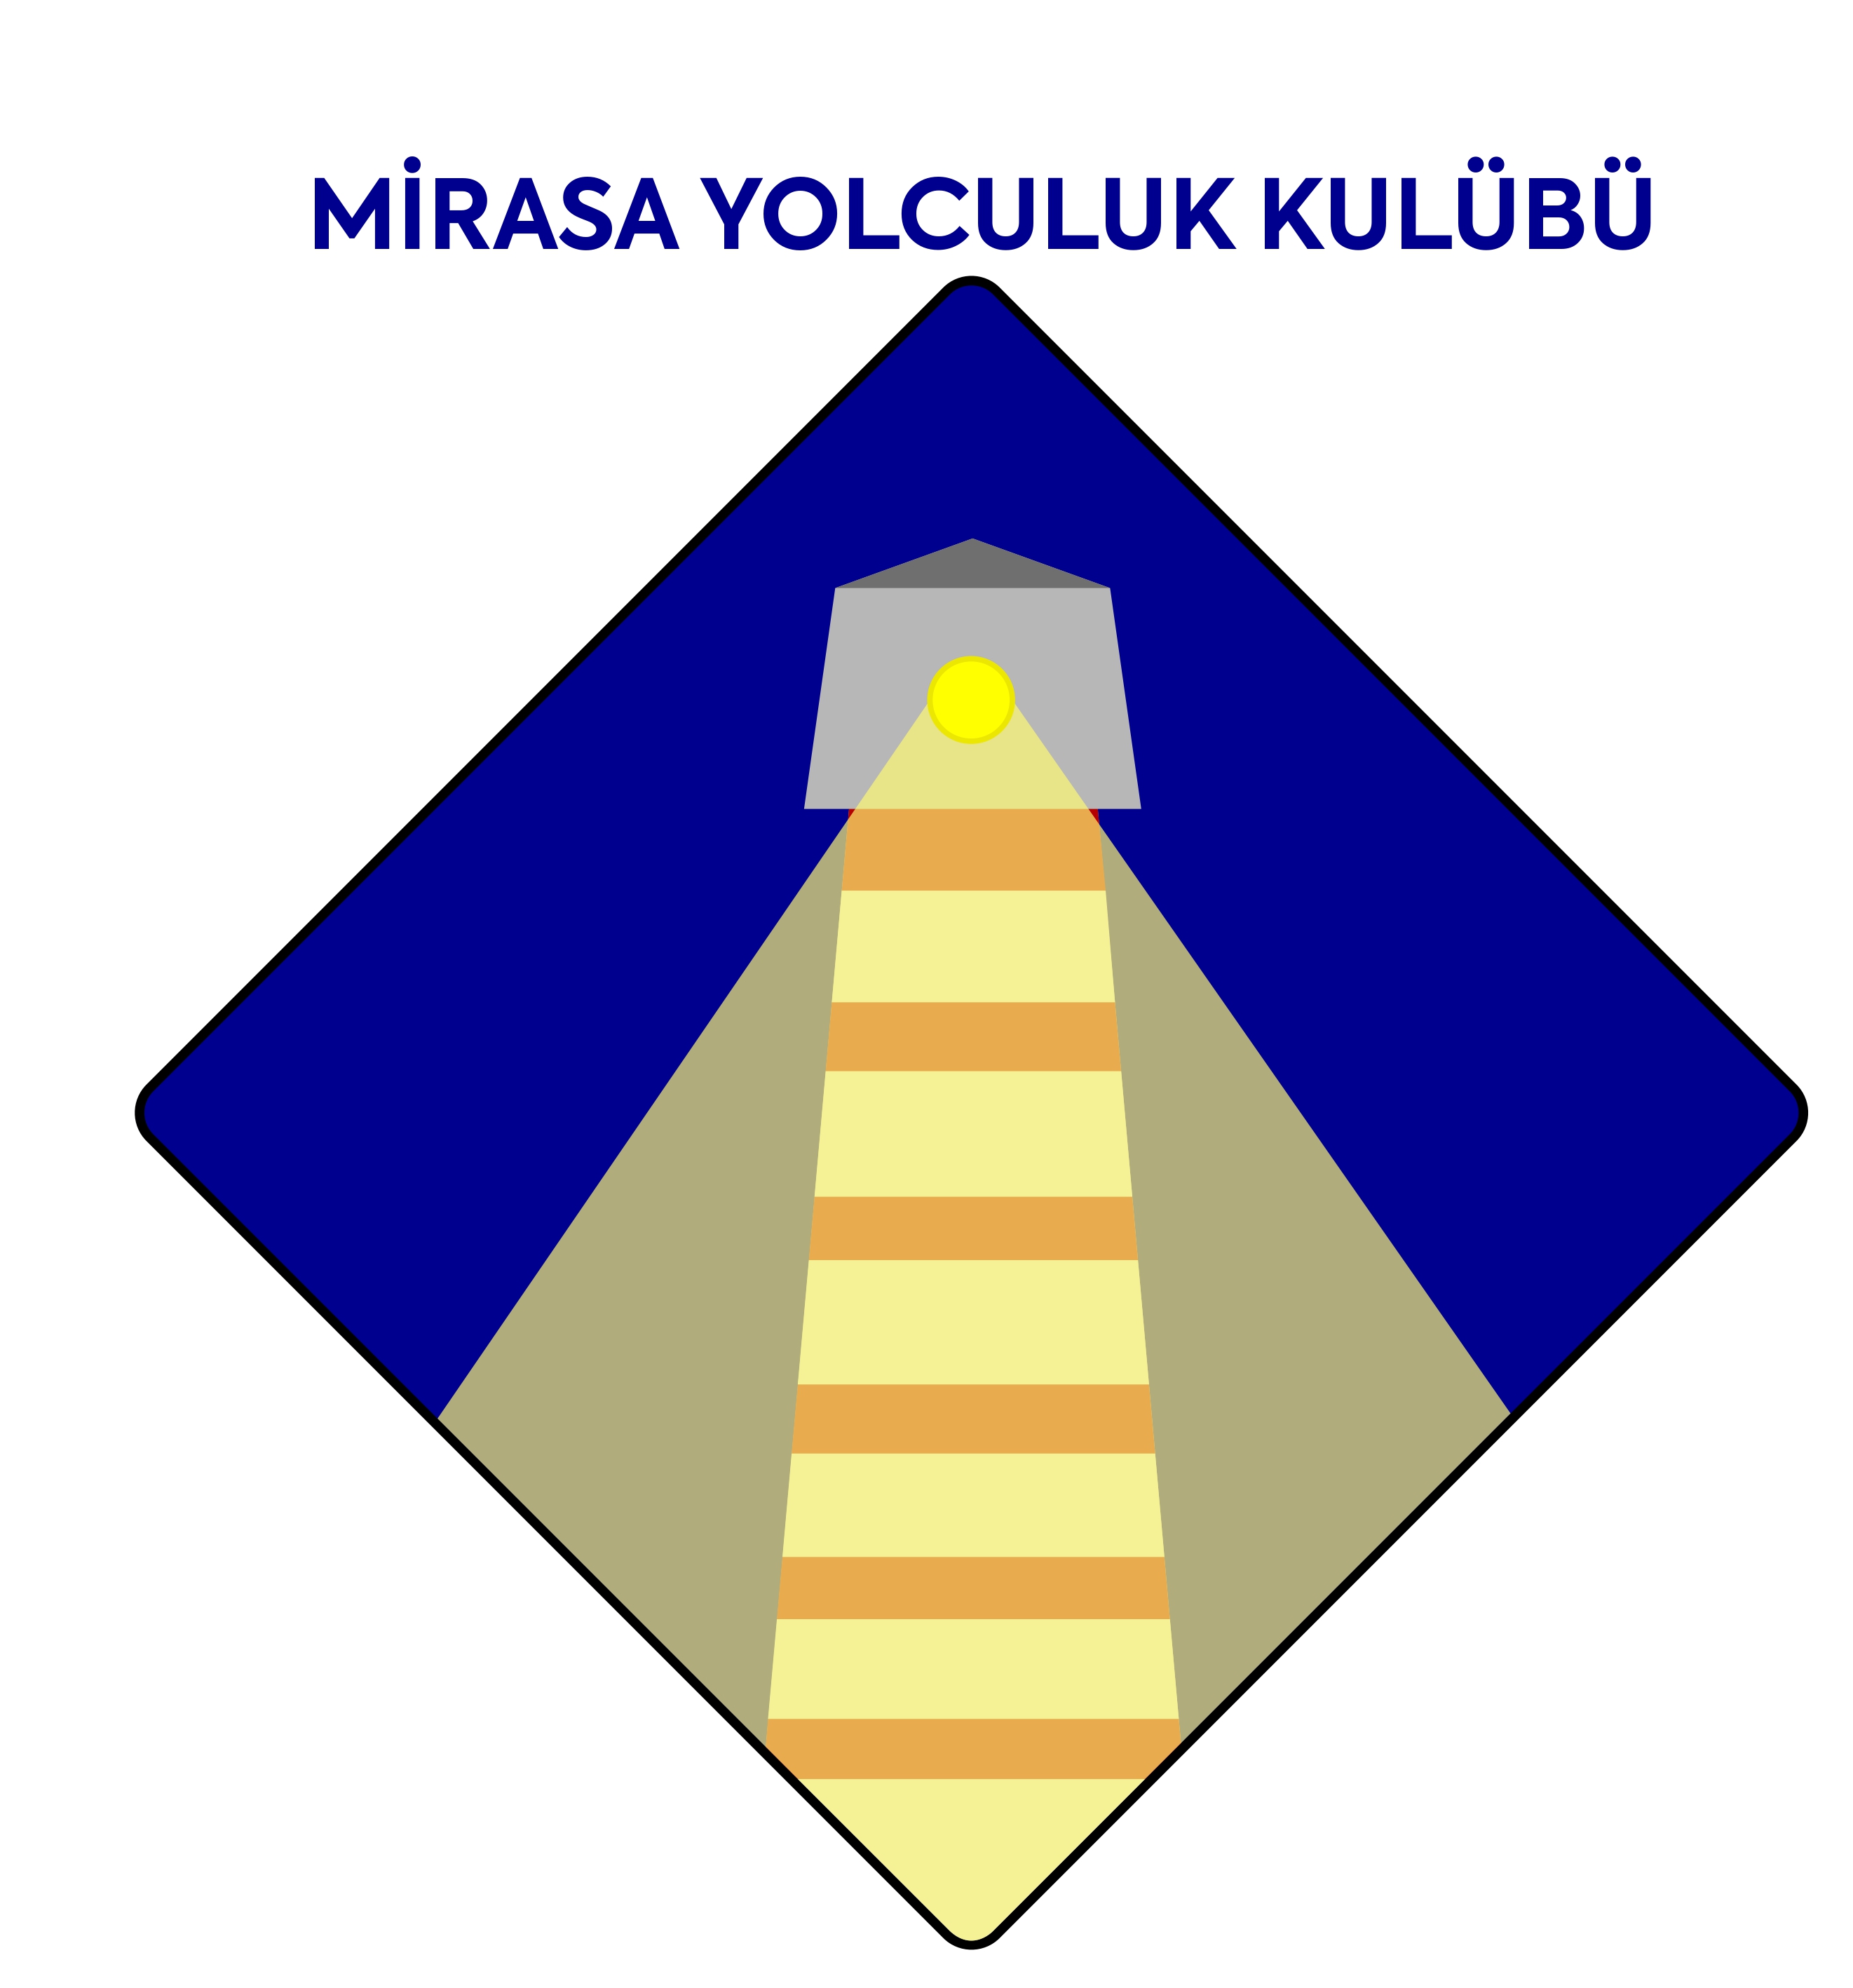 Mirasa Yolculuk Kulübü